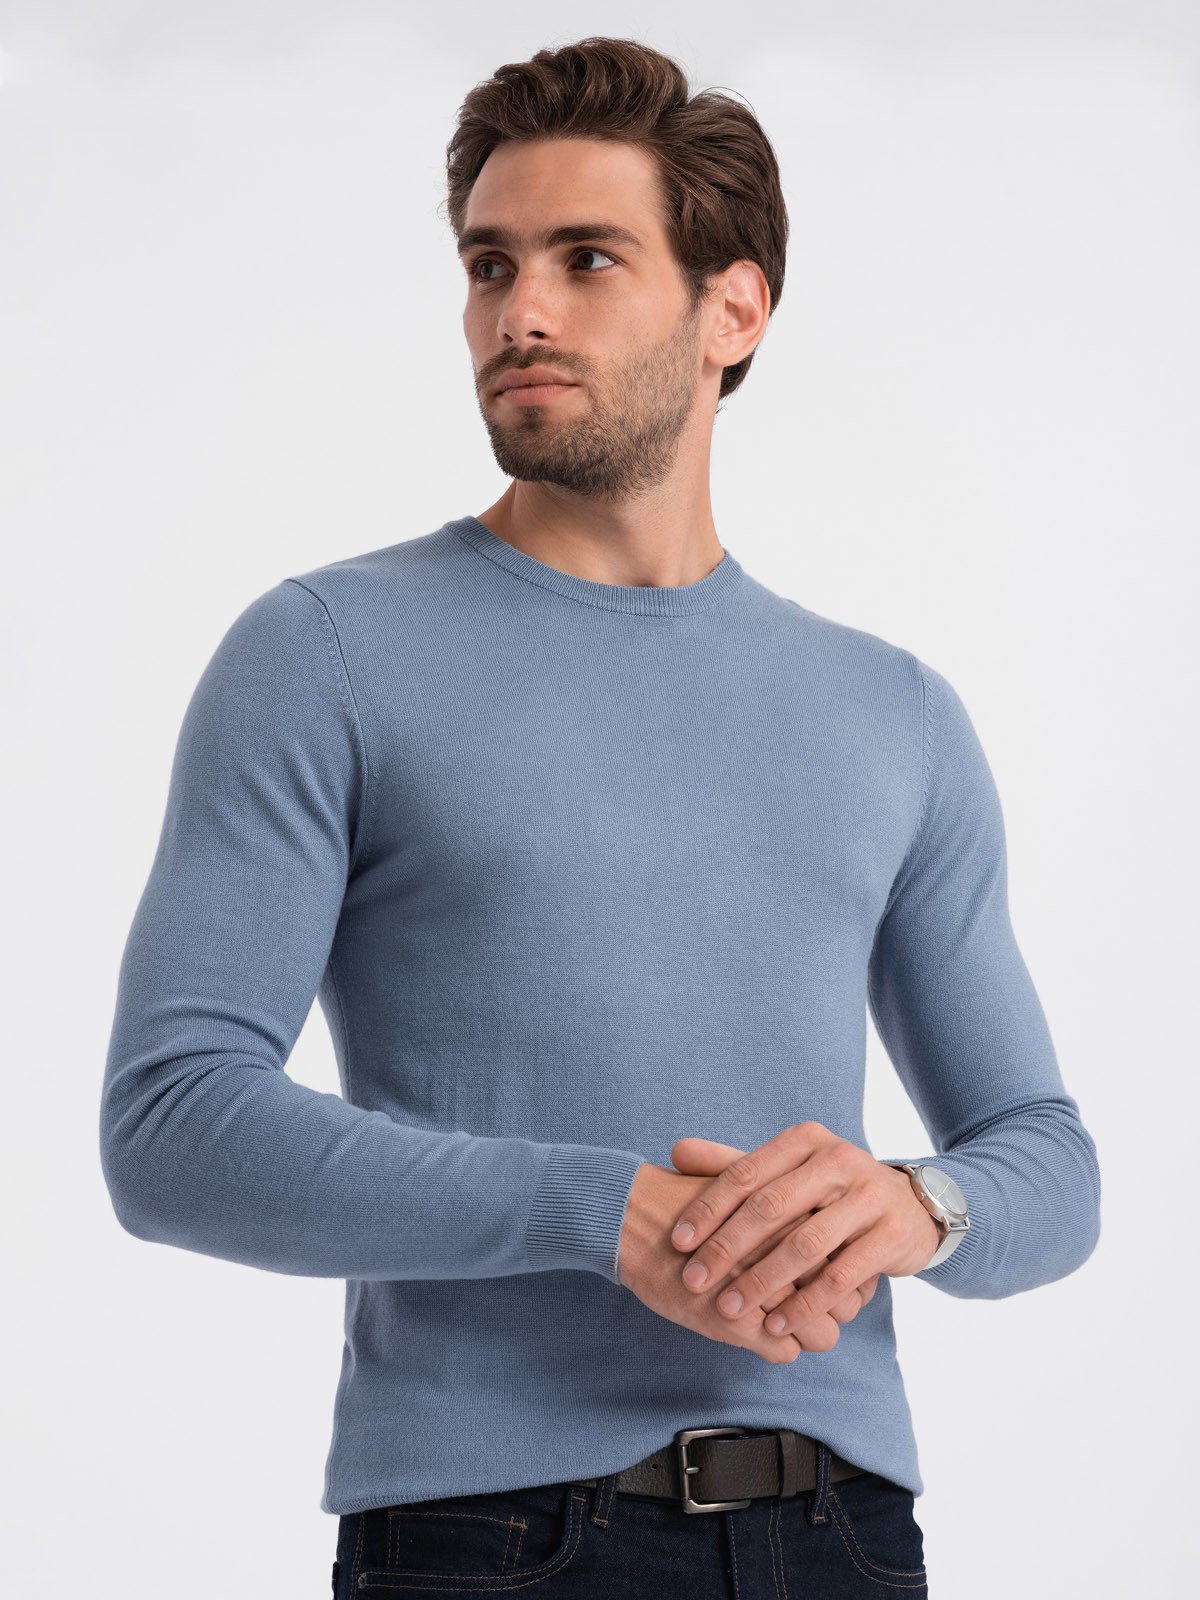 Classic men's sweater with round neckline - light blue V10 OM-SWBS V10 OM-SWBS - 0106